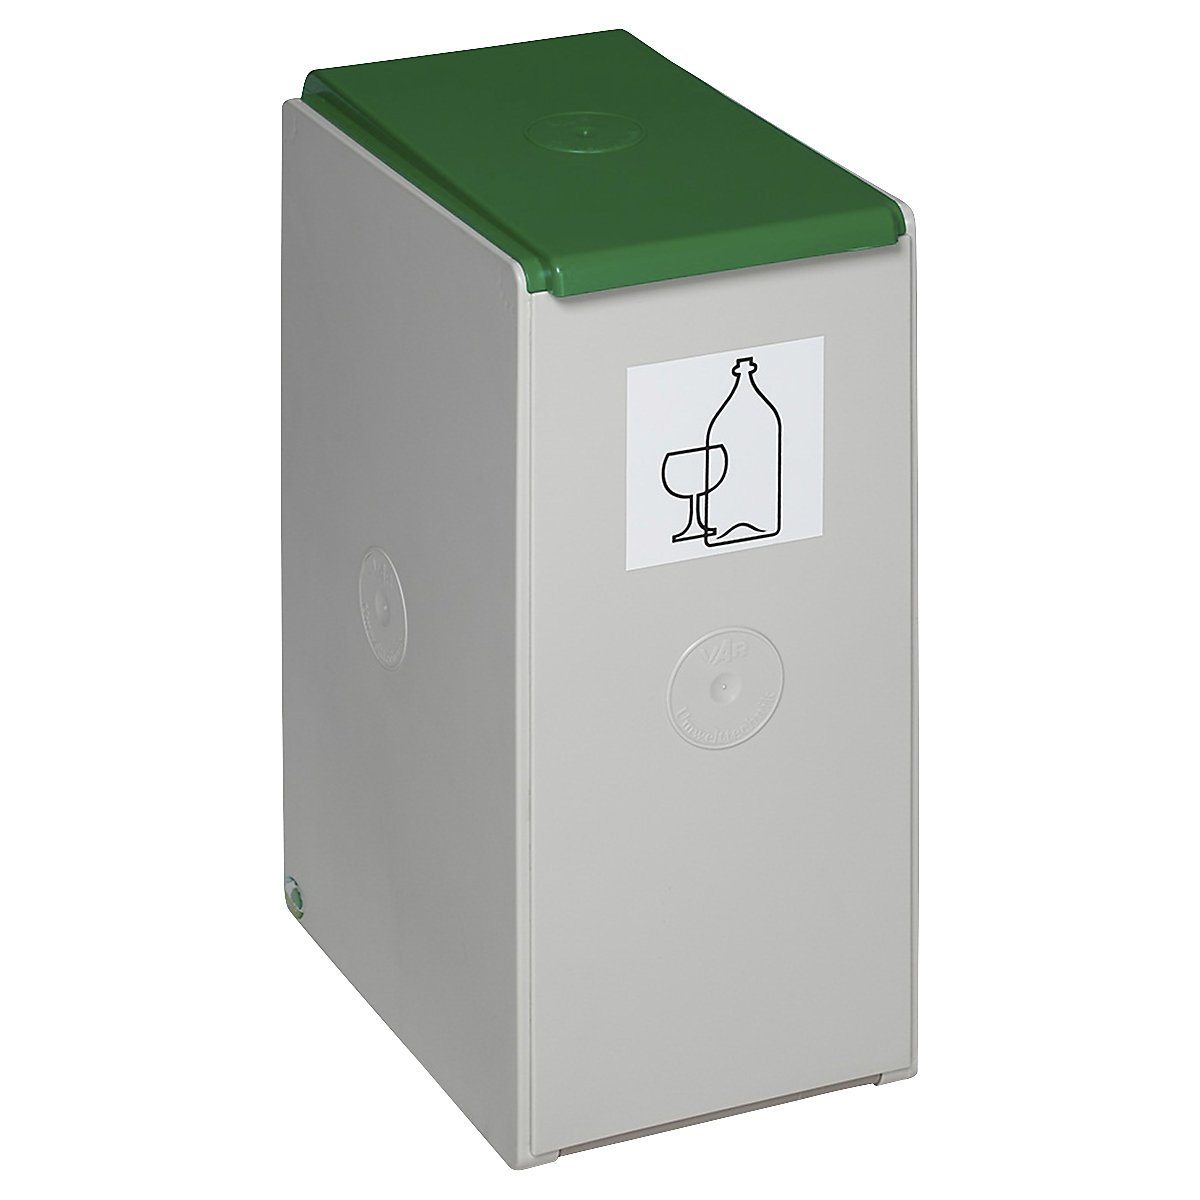 Szelektív hulladékgyűjtők és tárolók – VAR, 40 l űrtartalomhoz, külön tárolóként, zöld-7